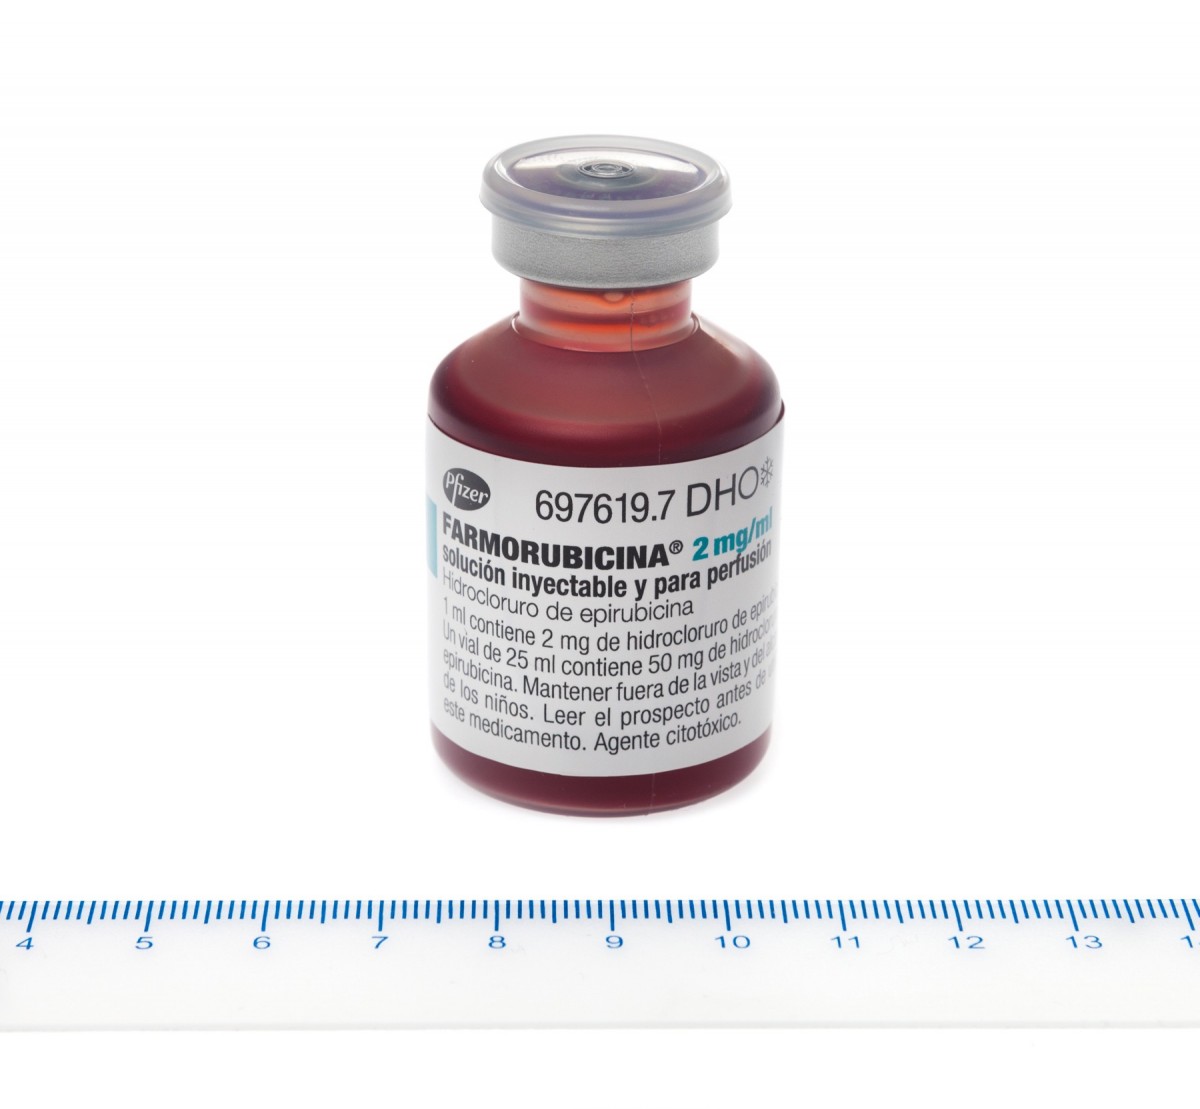 FARMORUBICINA 2 mg/ml SOLUCION INYECTABLE Y PARA PERFUSION , 1 vial de 25 ml fotografía de la forma farmacéutica.